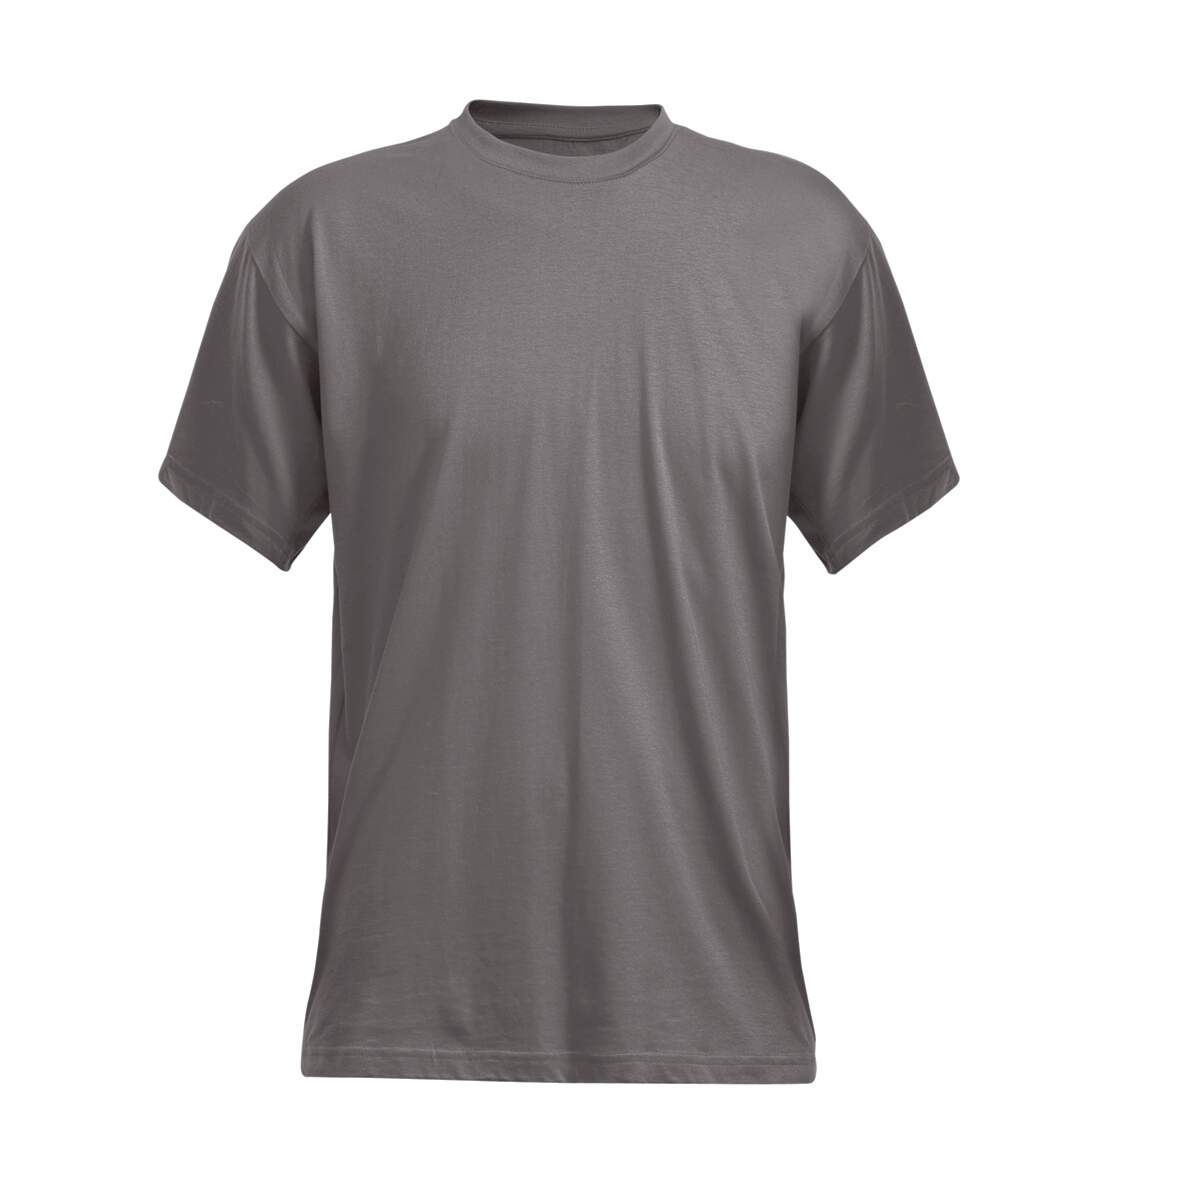 1204488 - T-Shirt grau Gr.S Code 1912